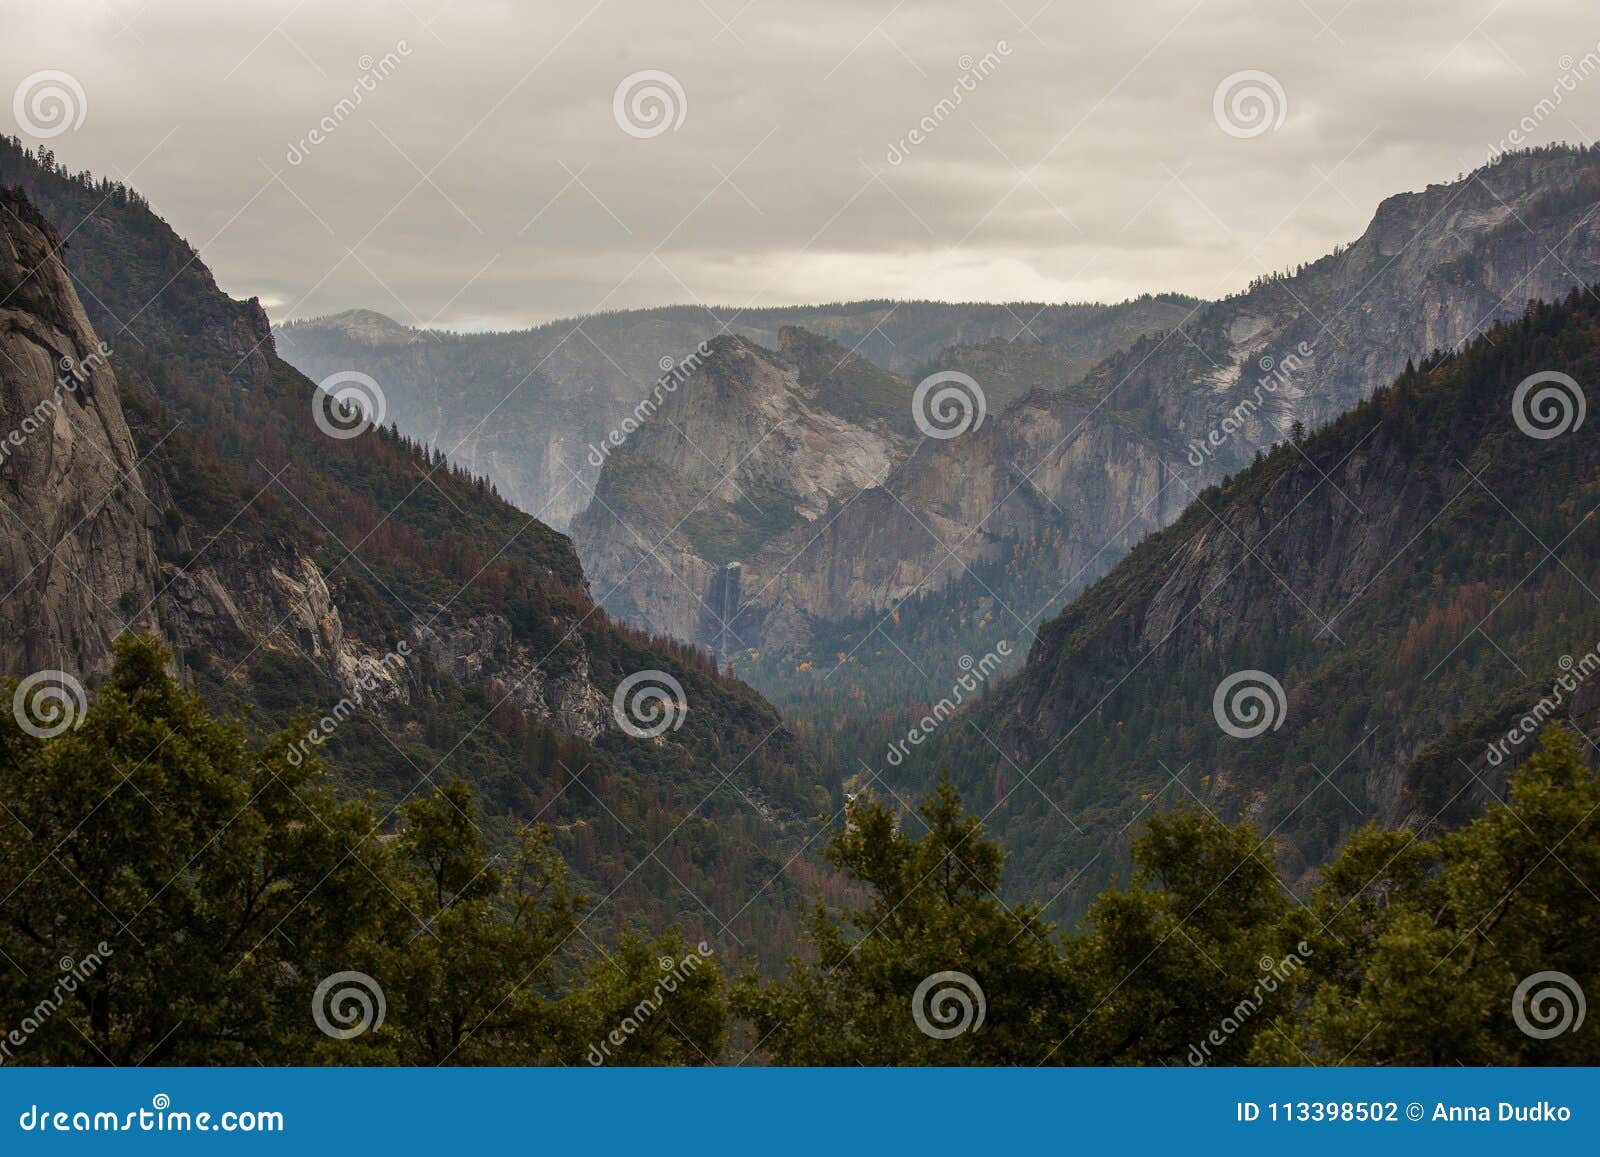 yosemite national park in californa